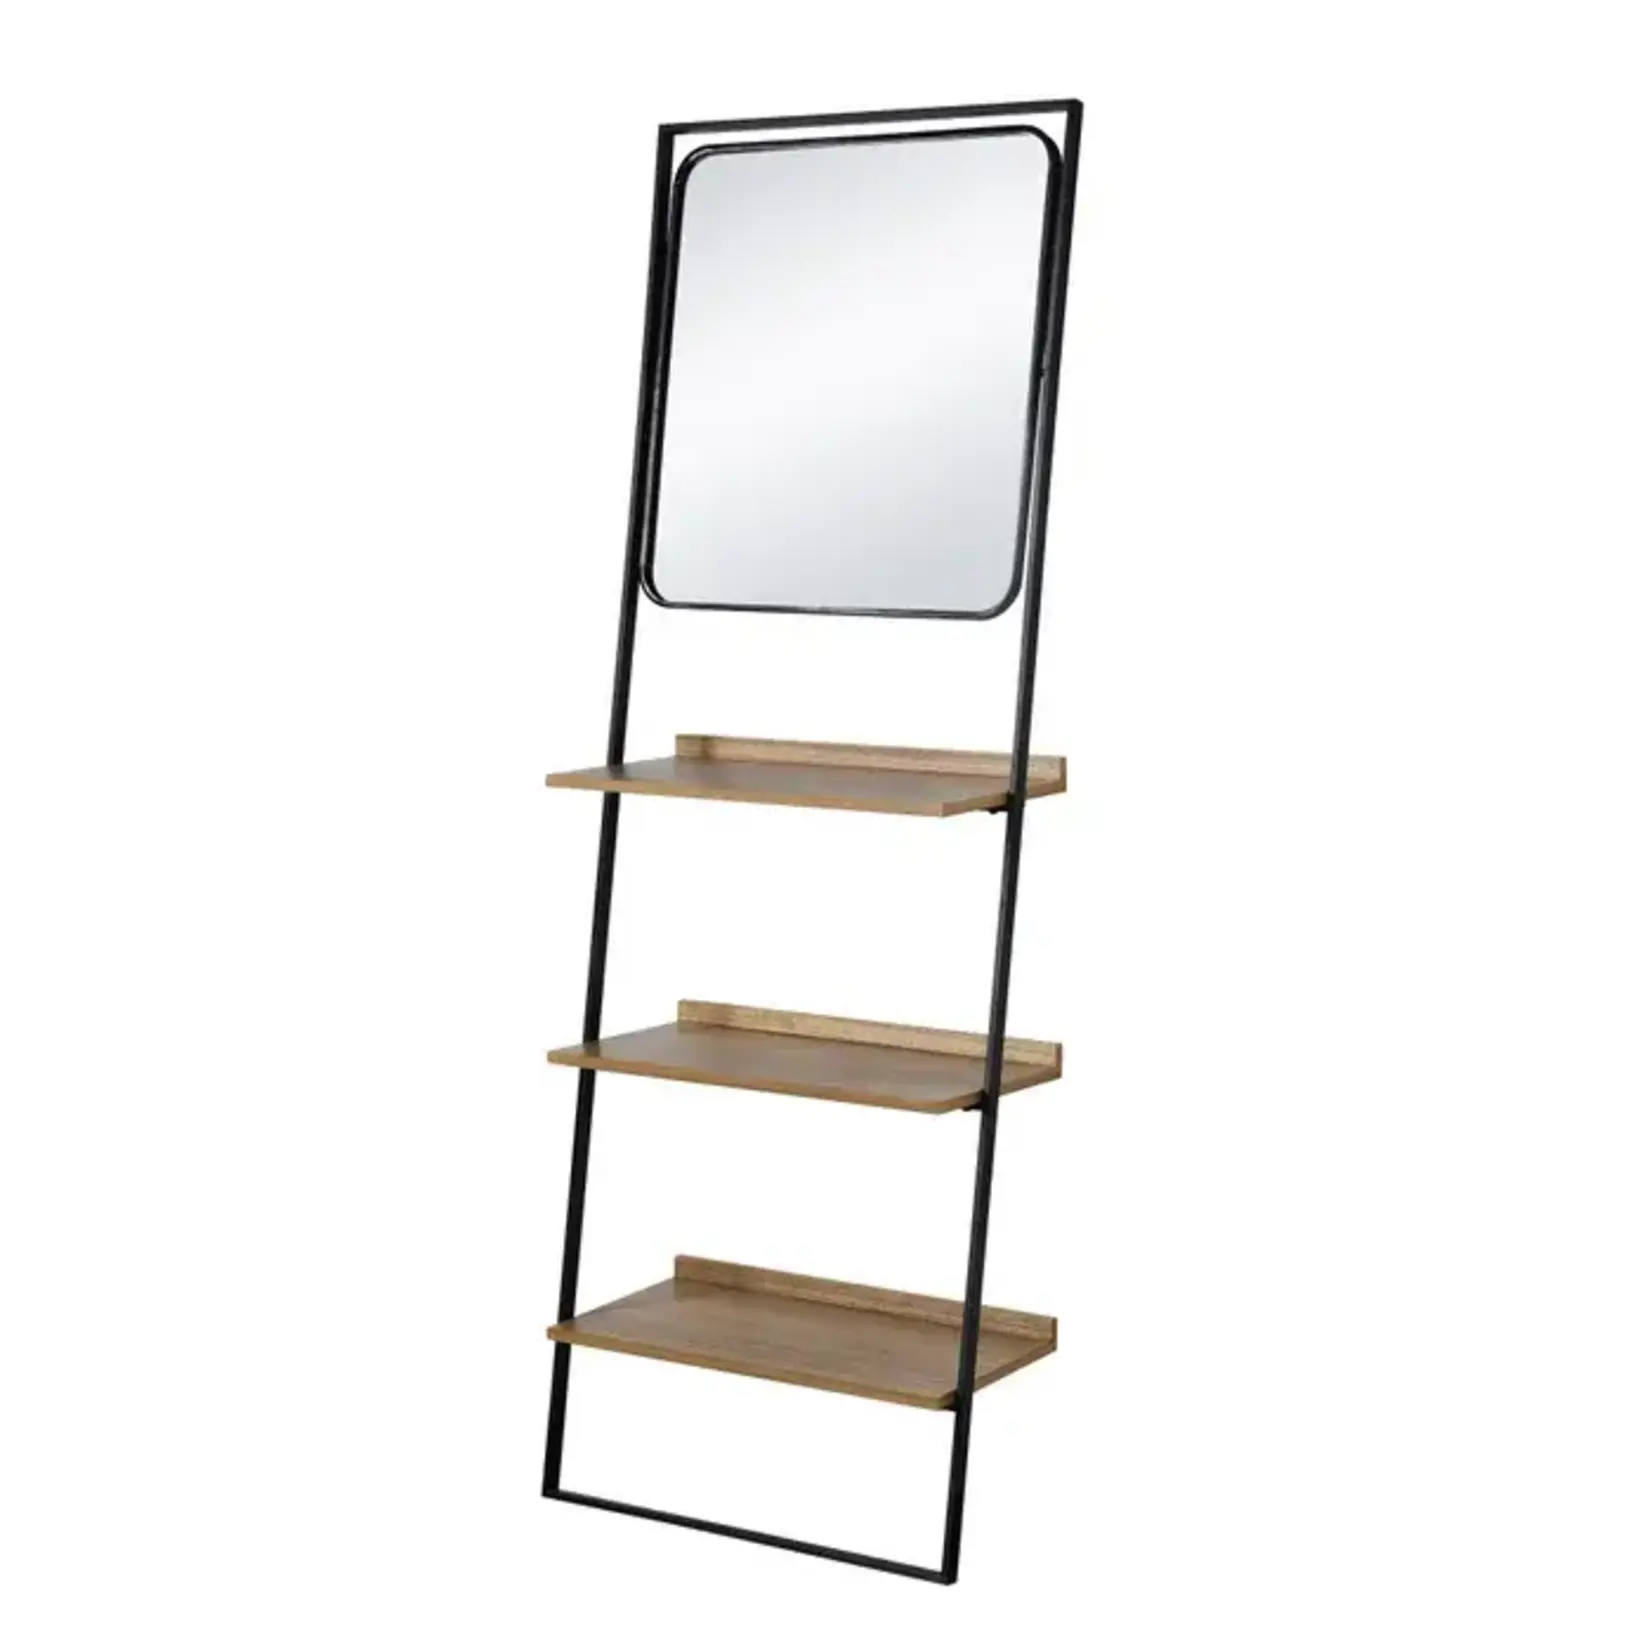 Stylecraft Decorative Wall Shelf w/Mirror 71.8x24.5x12